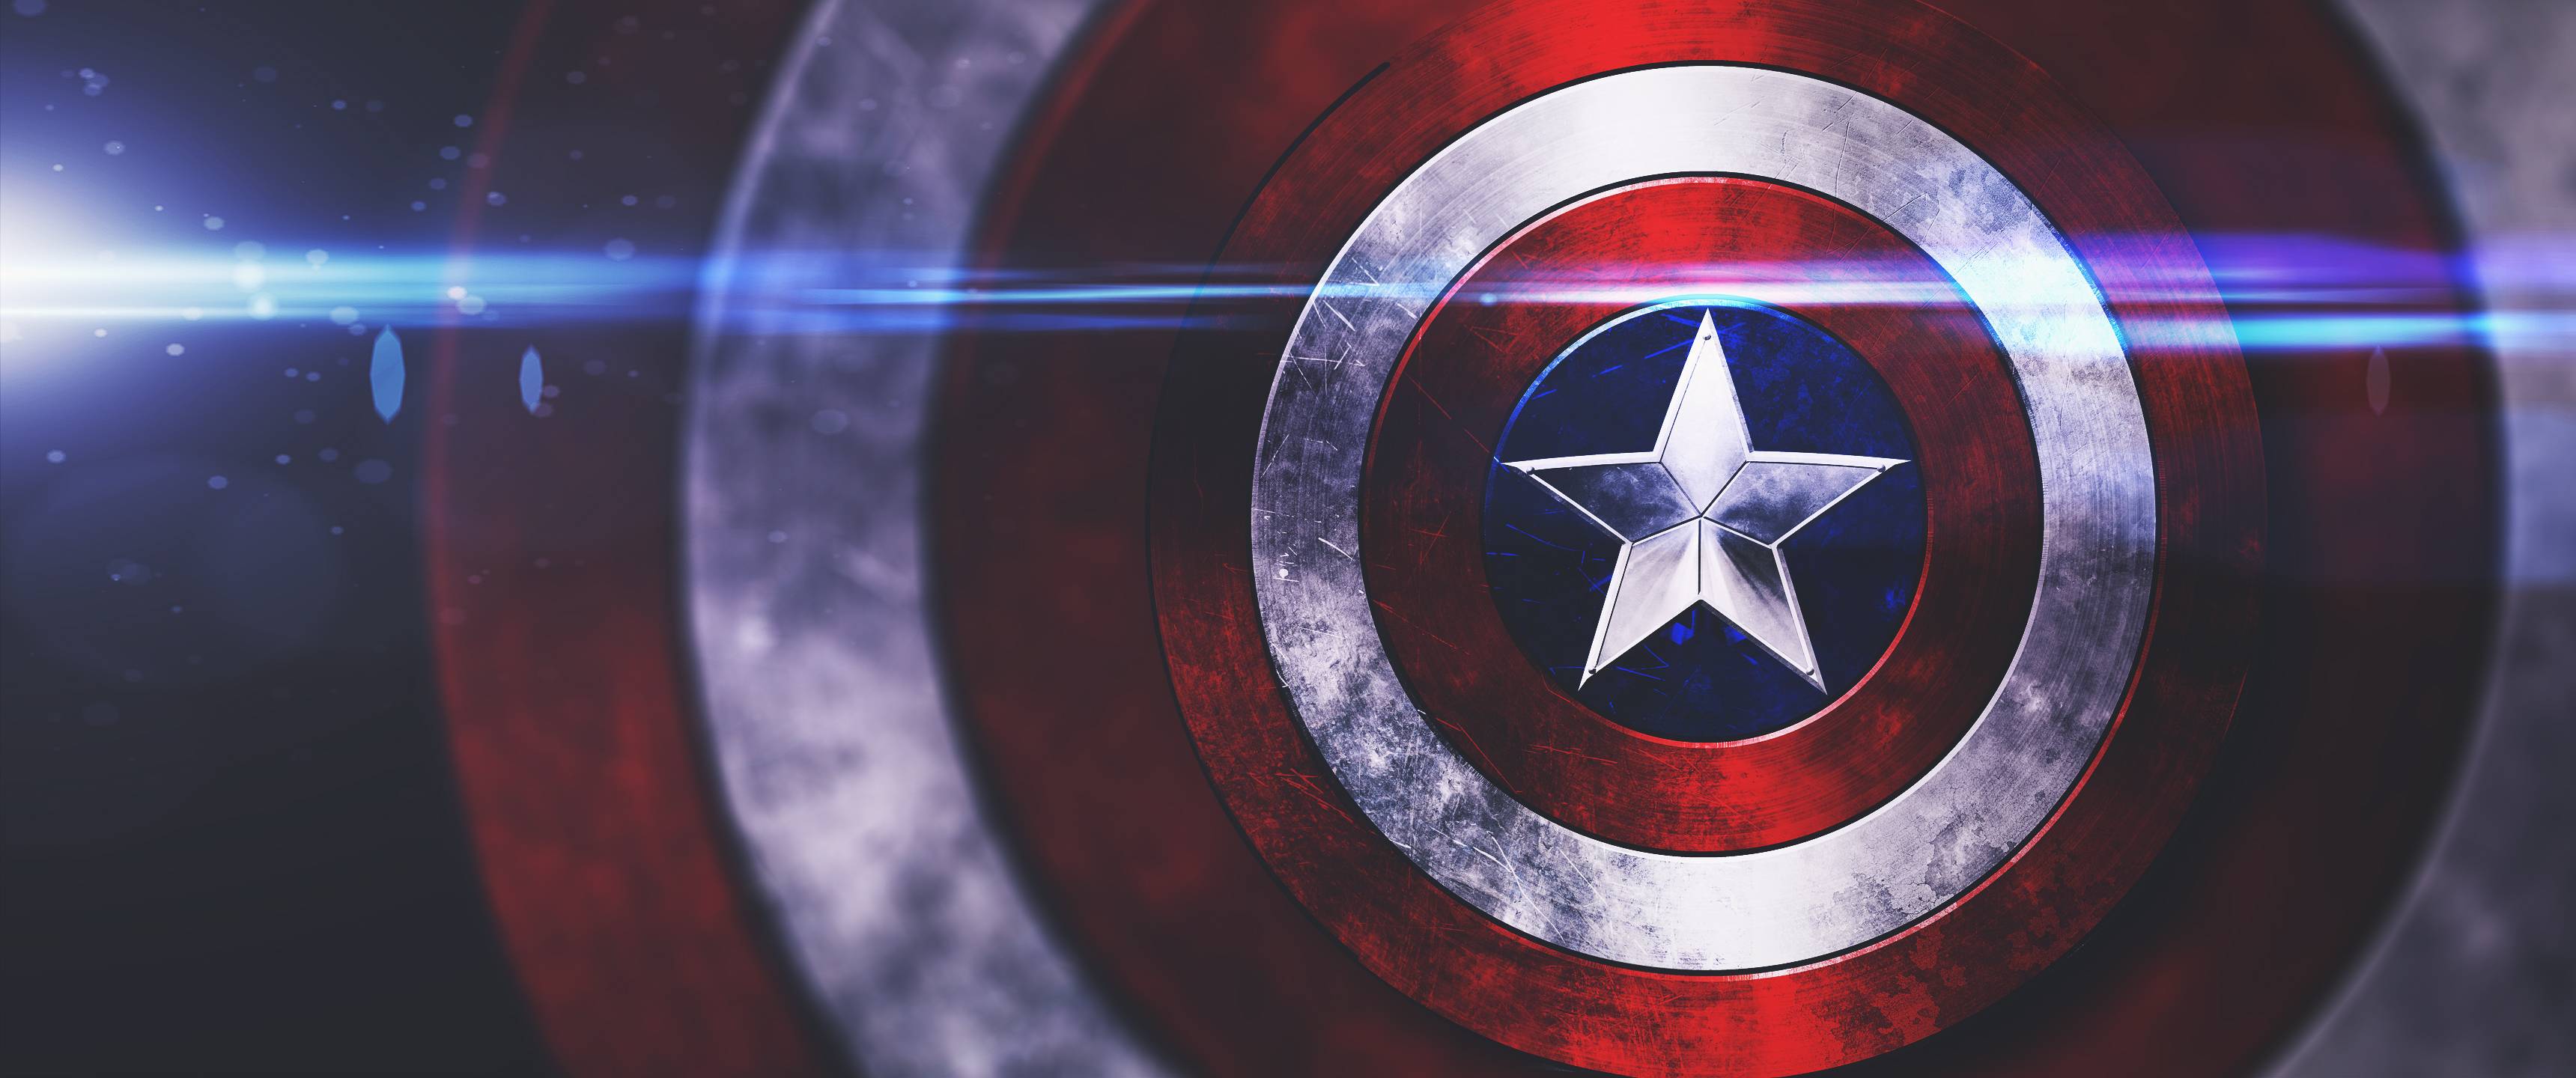 Captain America Shield Wallpaper Free Captain America Shield